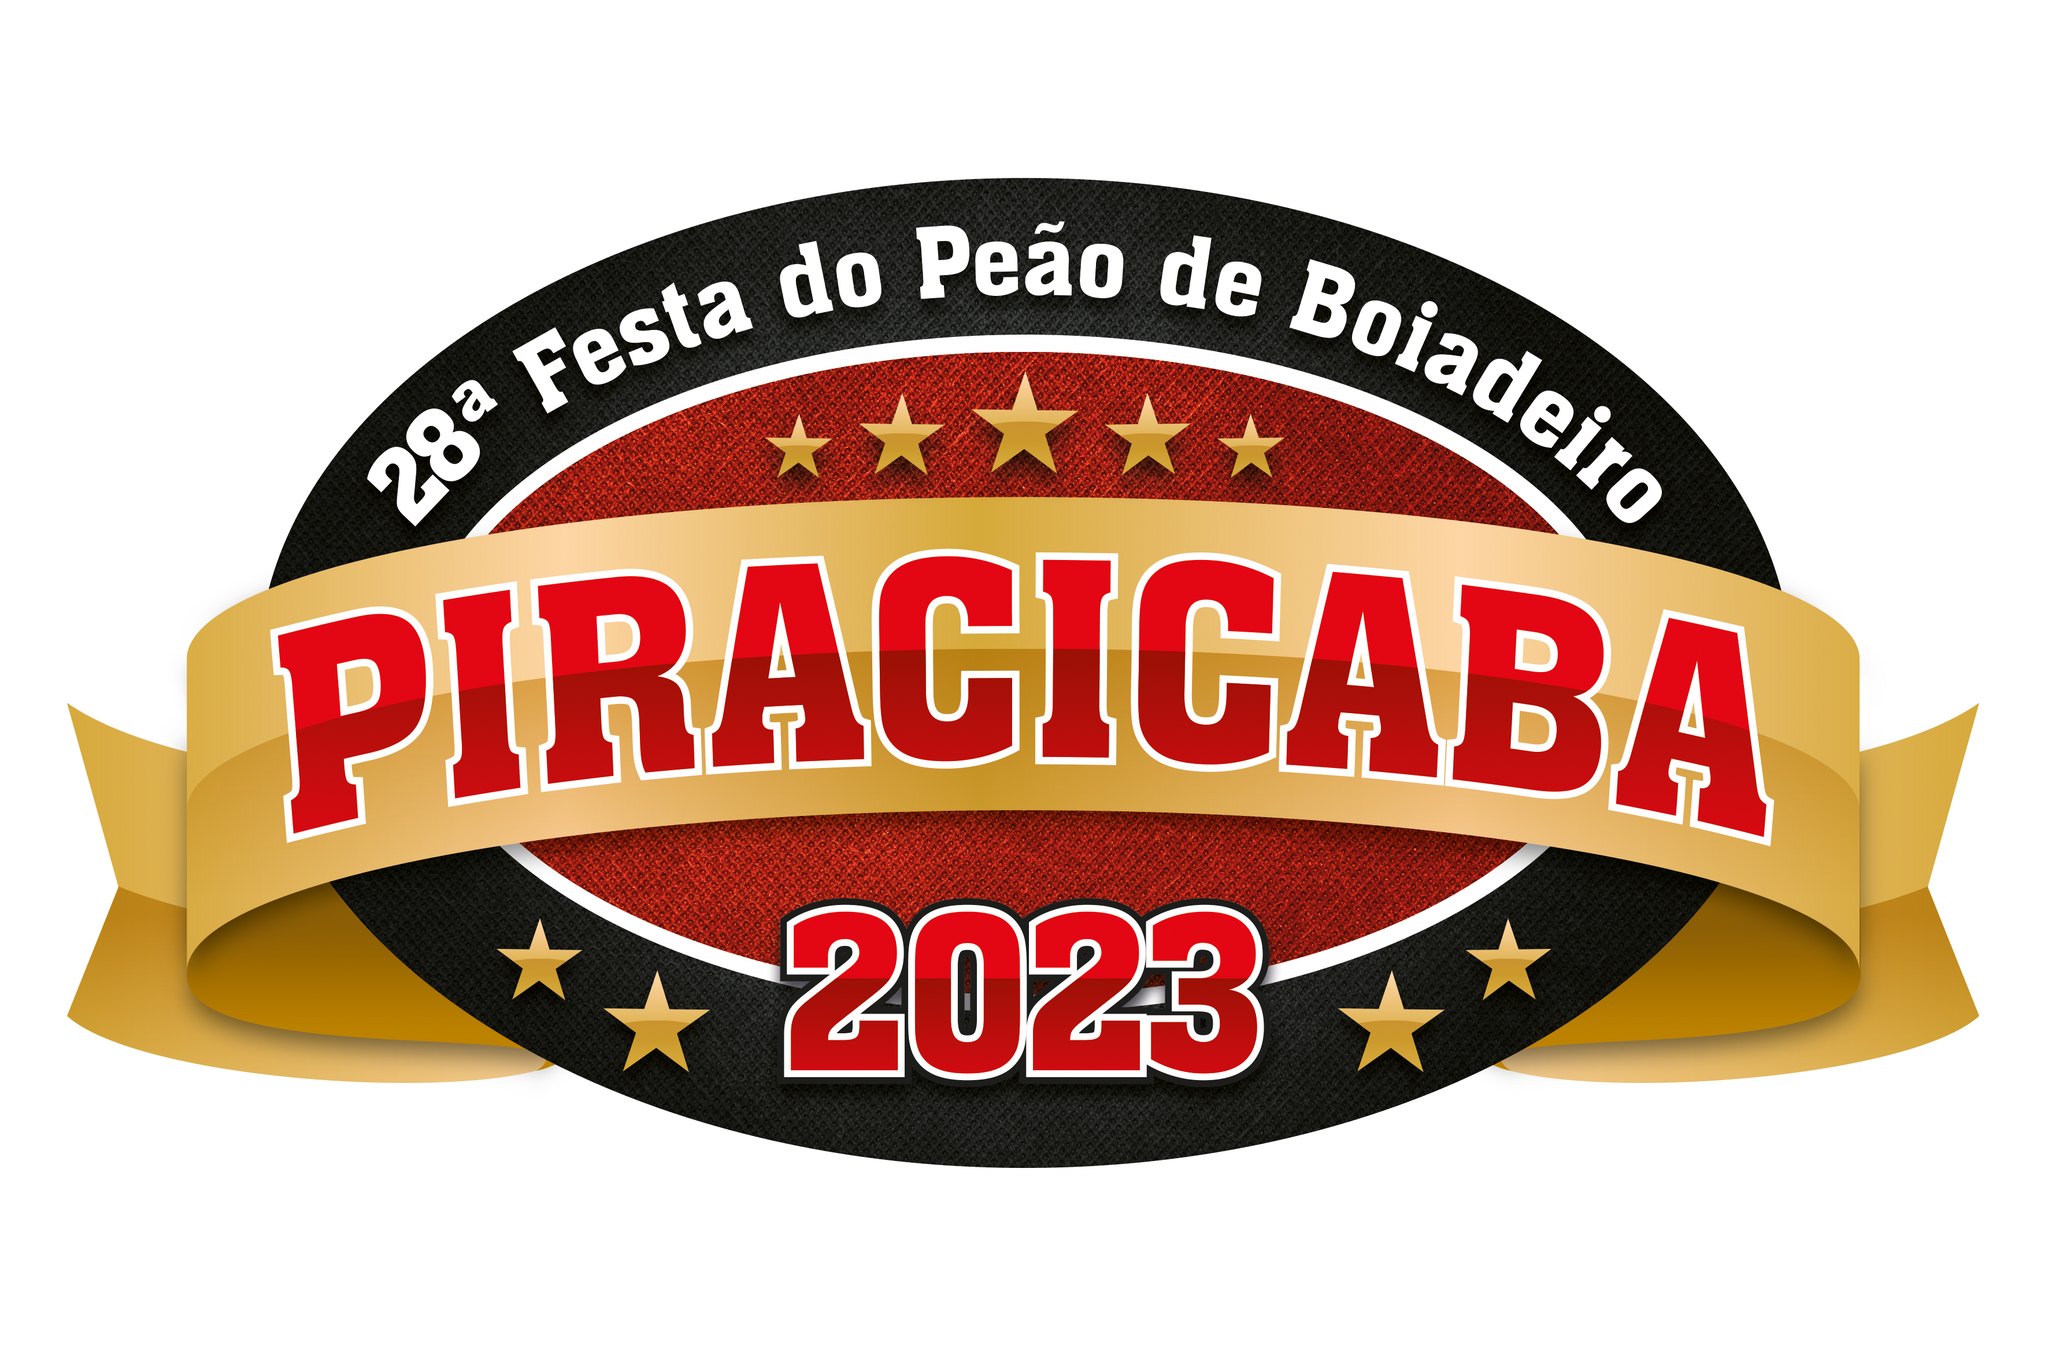 Celebre a tradição na 28ª Festa de Peão de Boiadeiro de Piracicaba, Especial Publicitário - Stefanini